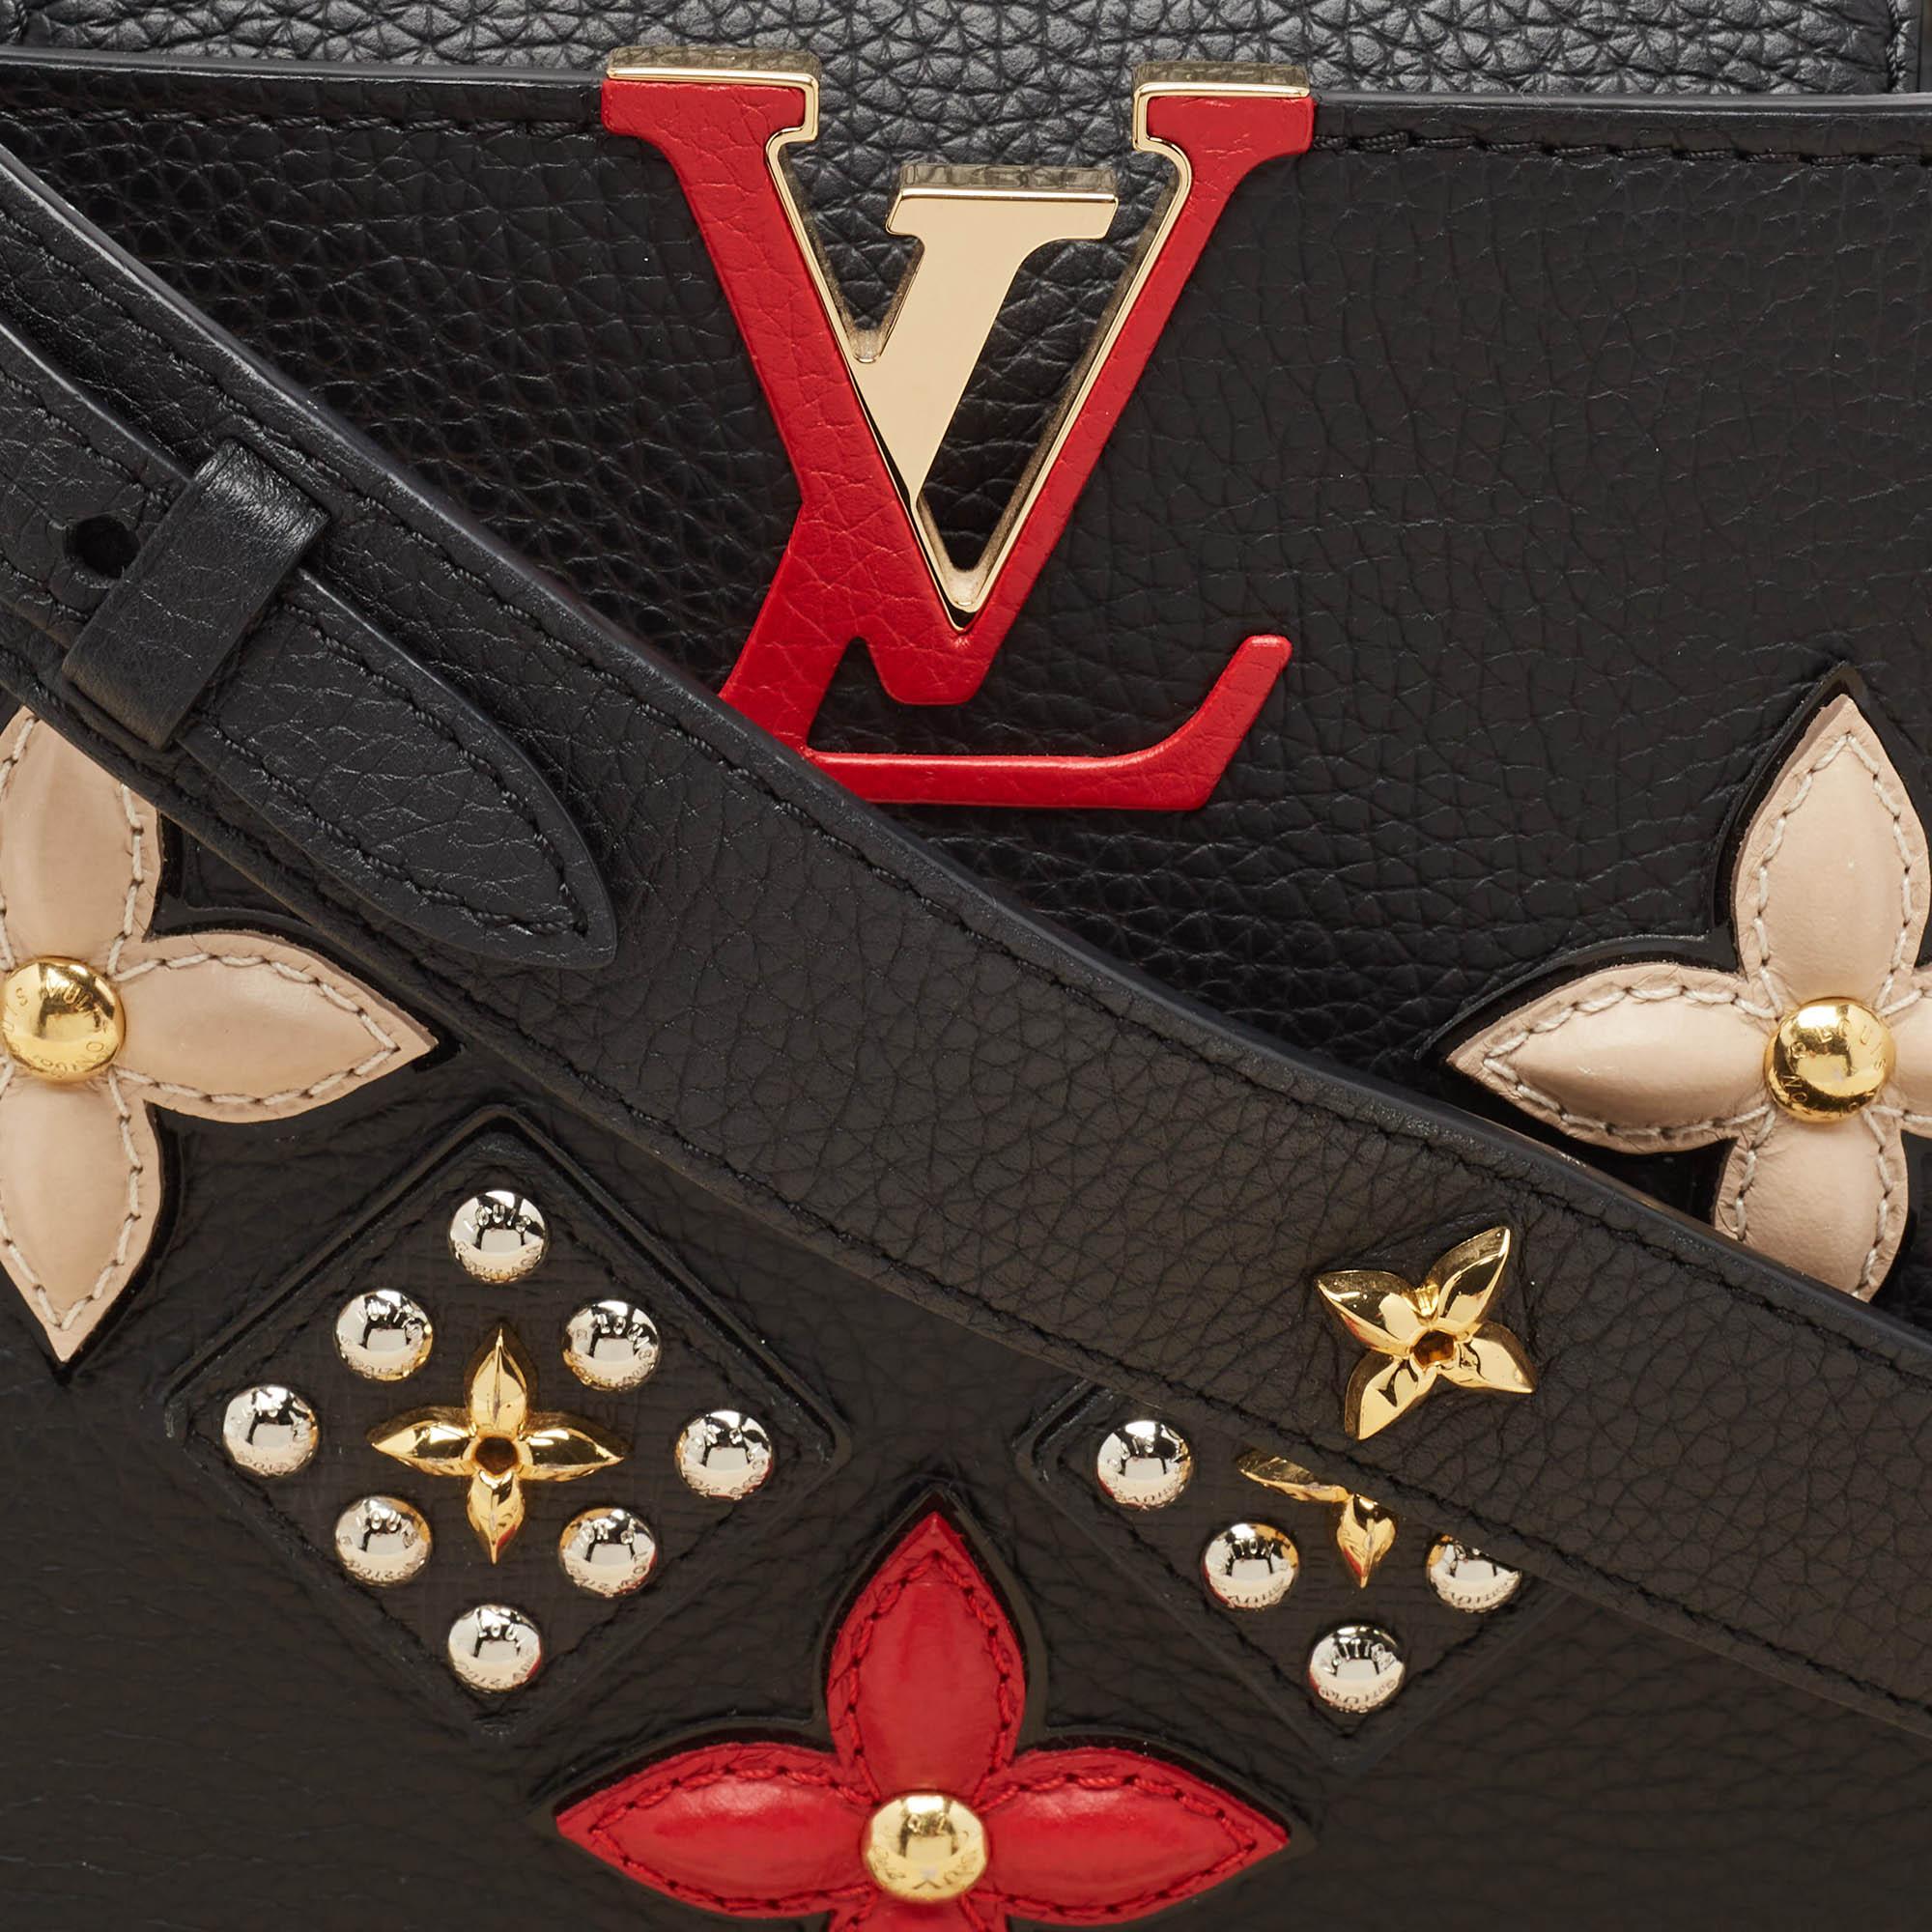 Louis Vuitton Black Taurillon Leather Limited Edition Applique Capucines PM Bag For Sale 7